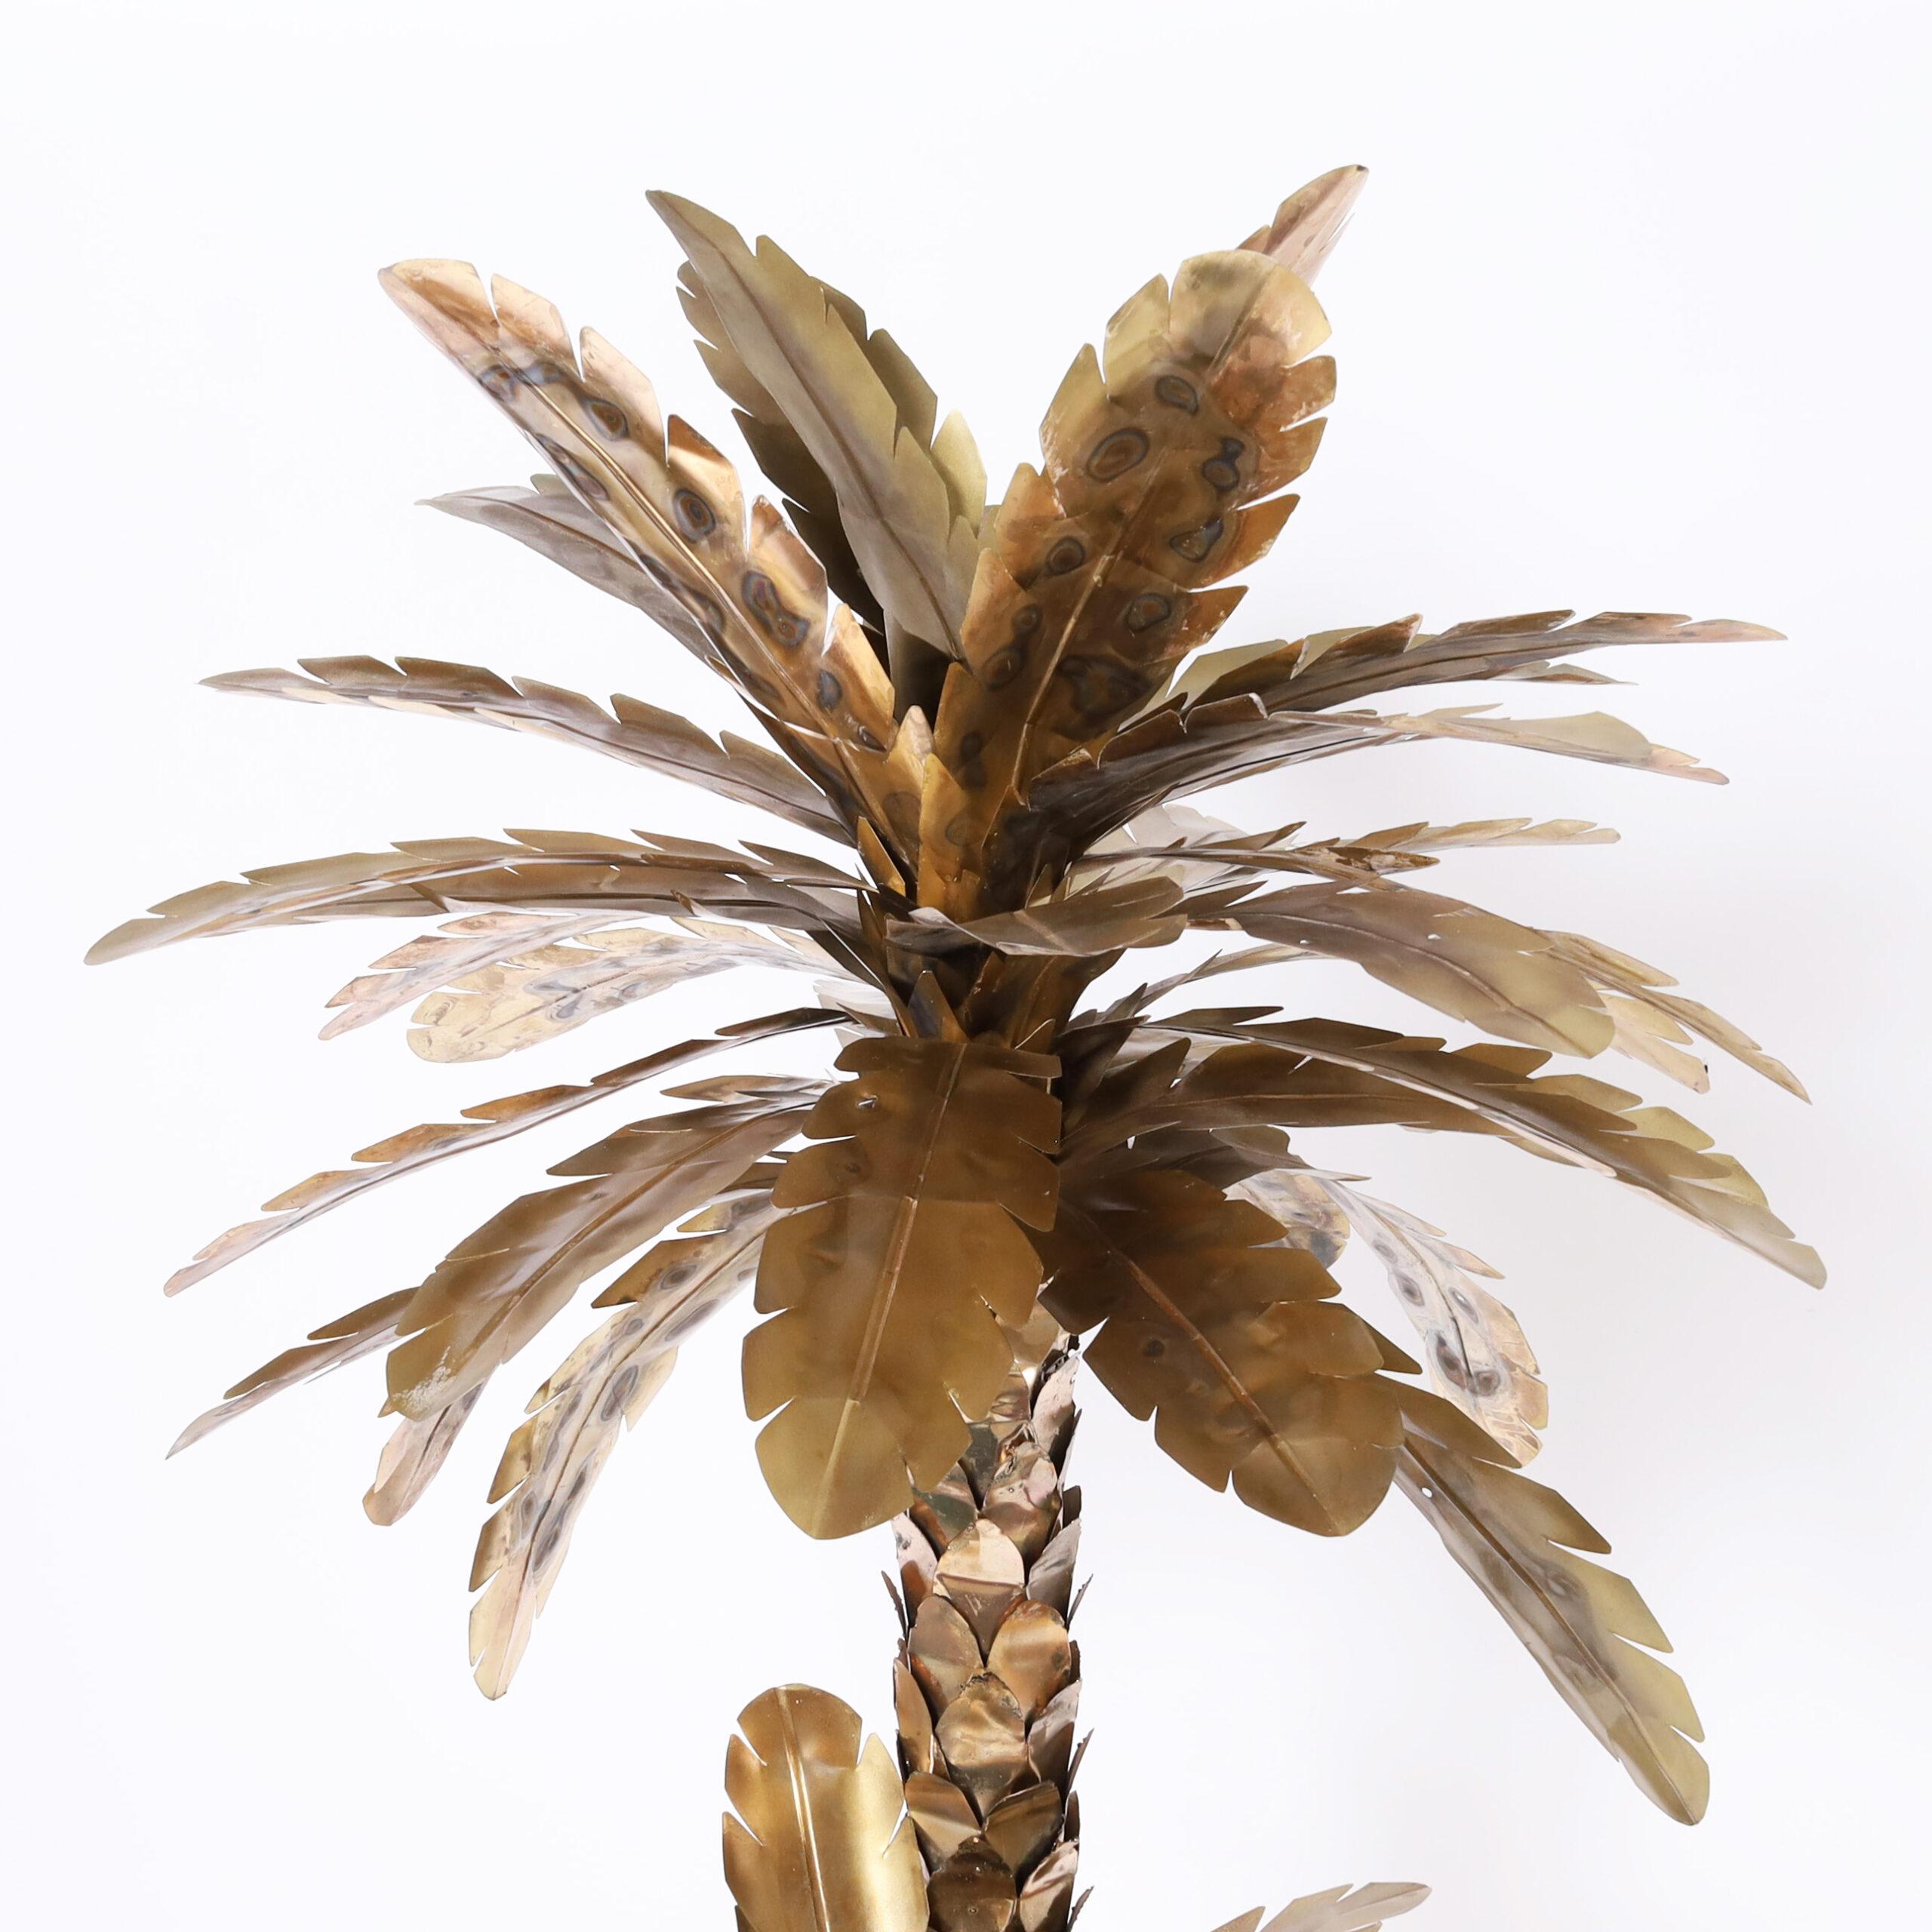 Schicke, großformatige Palmen-Skulptur im Vintage-Stil aus Metall mit eloxierter Oberfläche und eingebrannten Highlights.